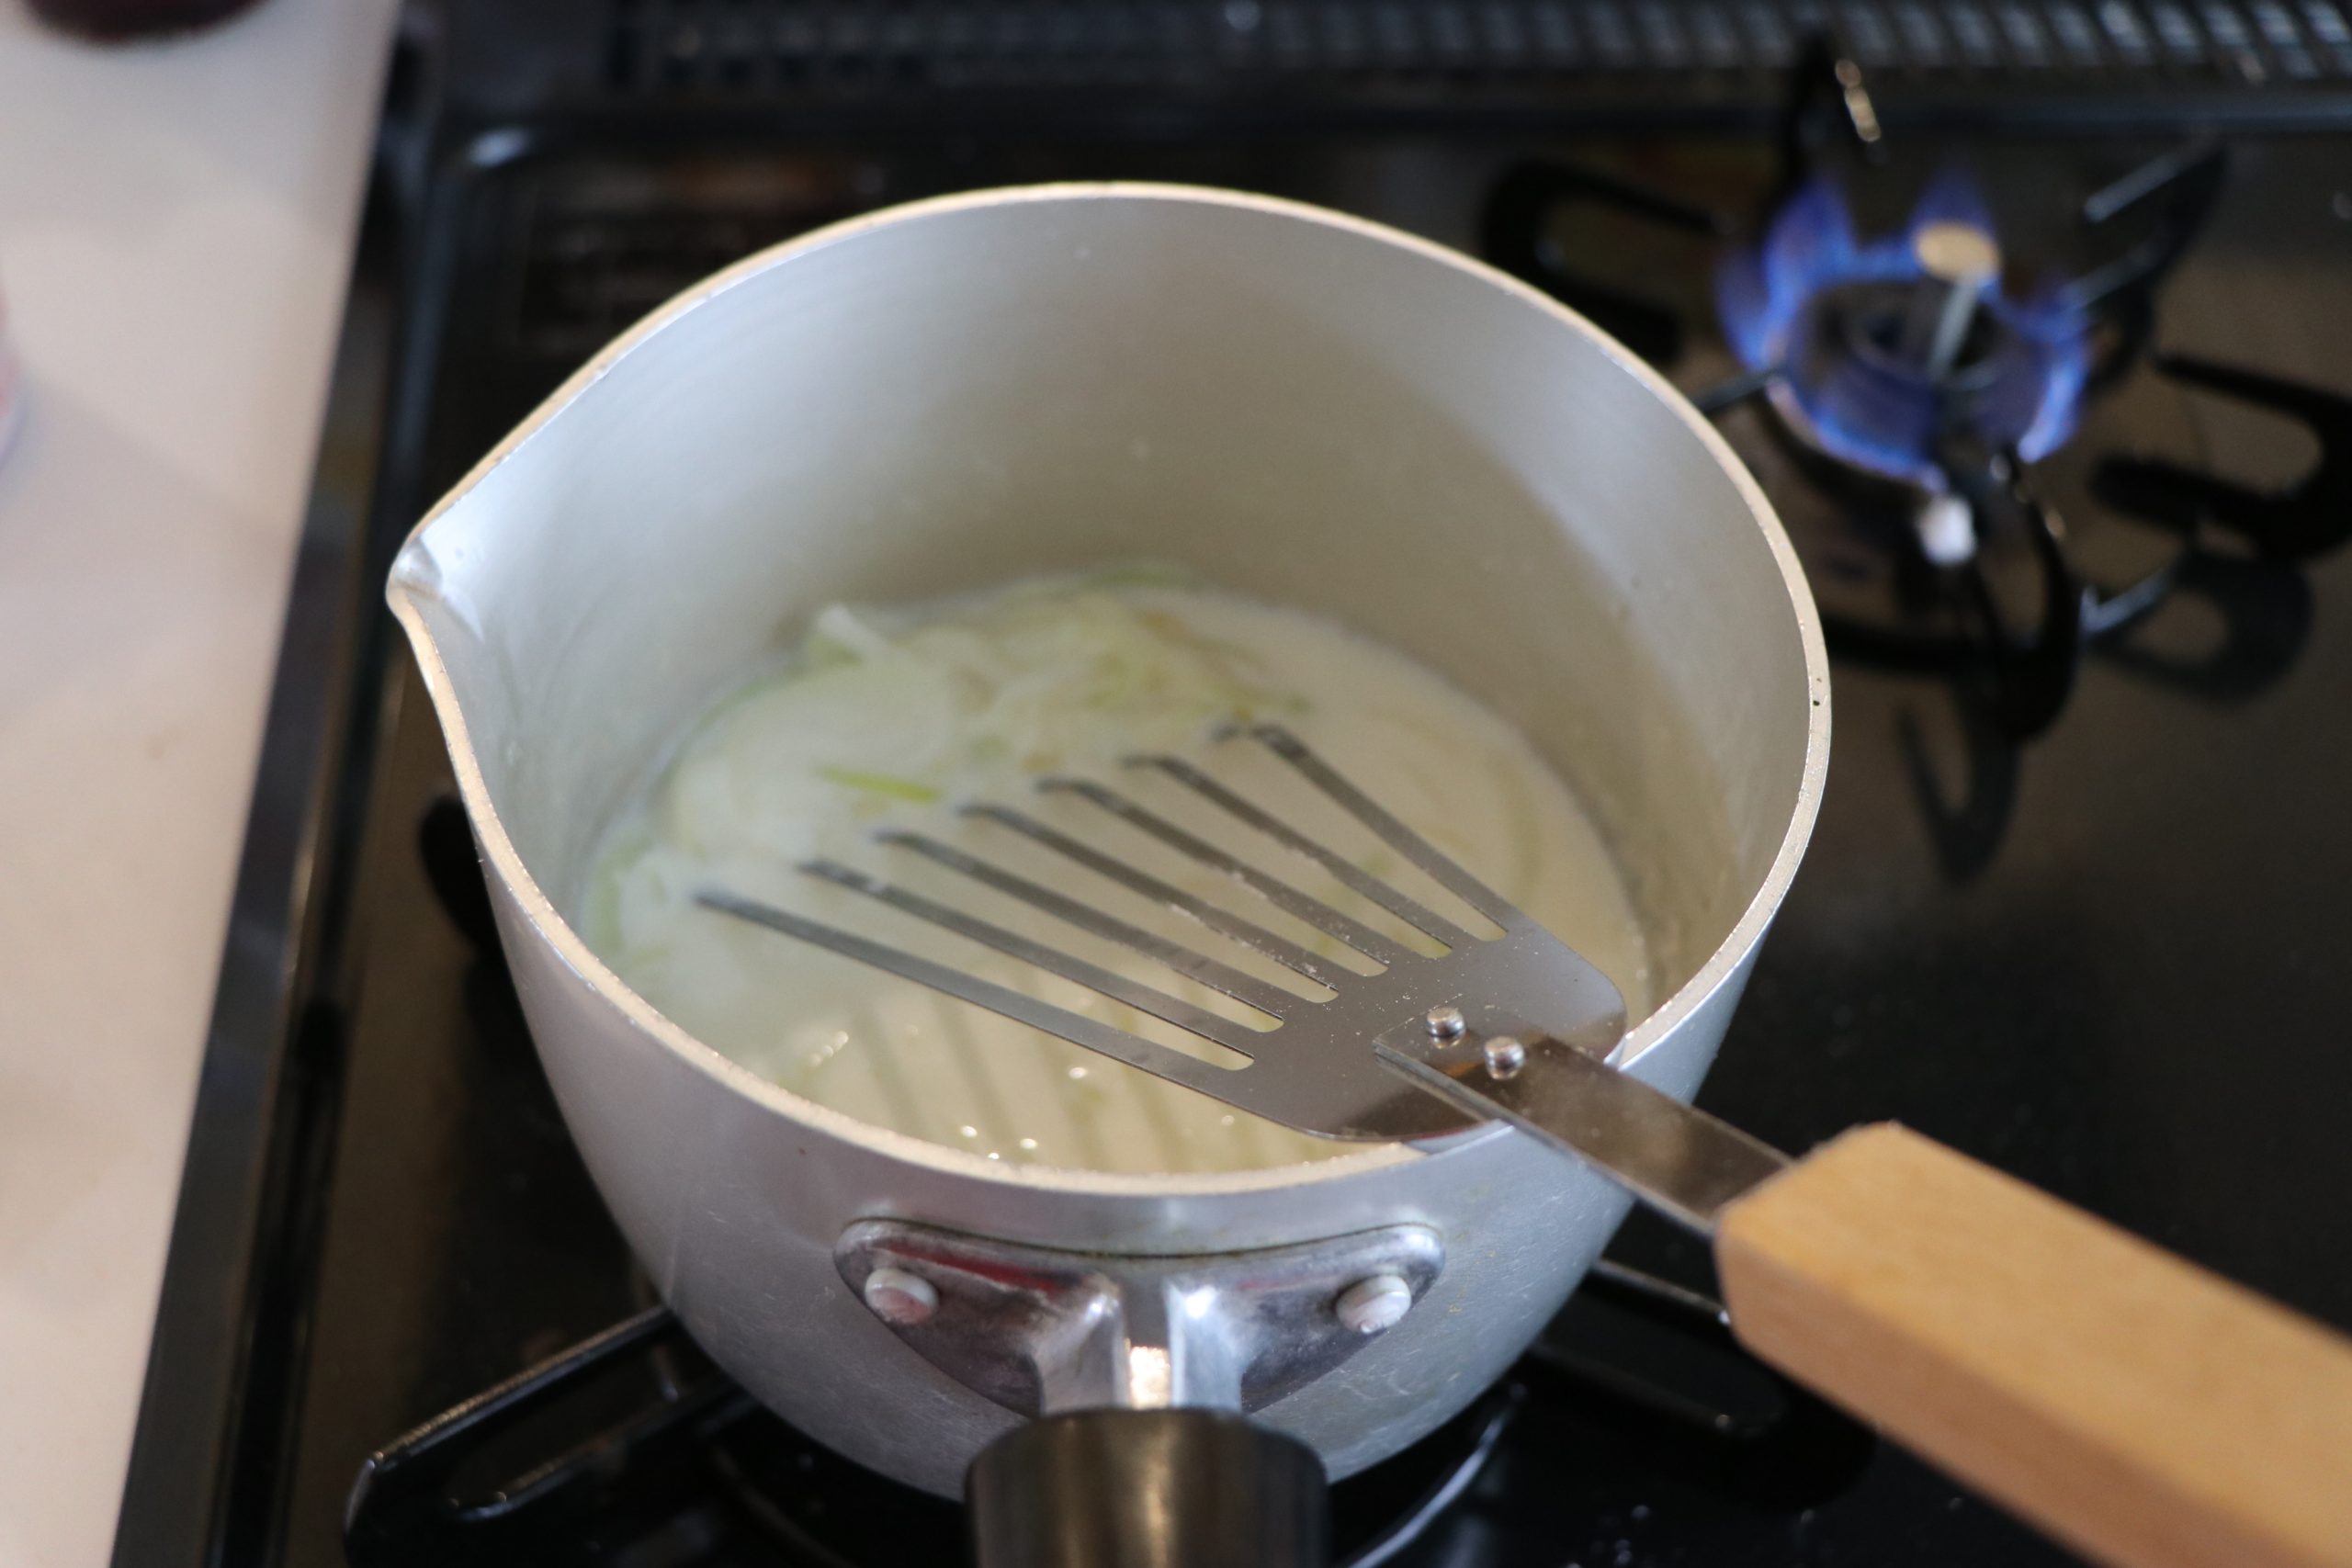 玉ねぎが透き通るまで炒めたら、薄力粉を加えて炒める。
そこに牛乳を少しずつ加えてダマにならないように混ぜる。